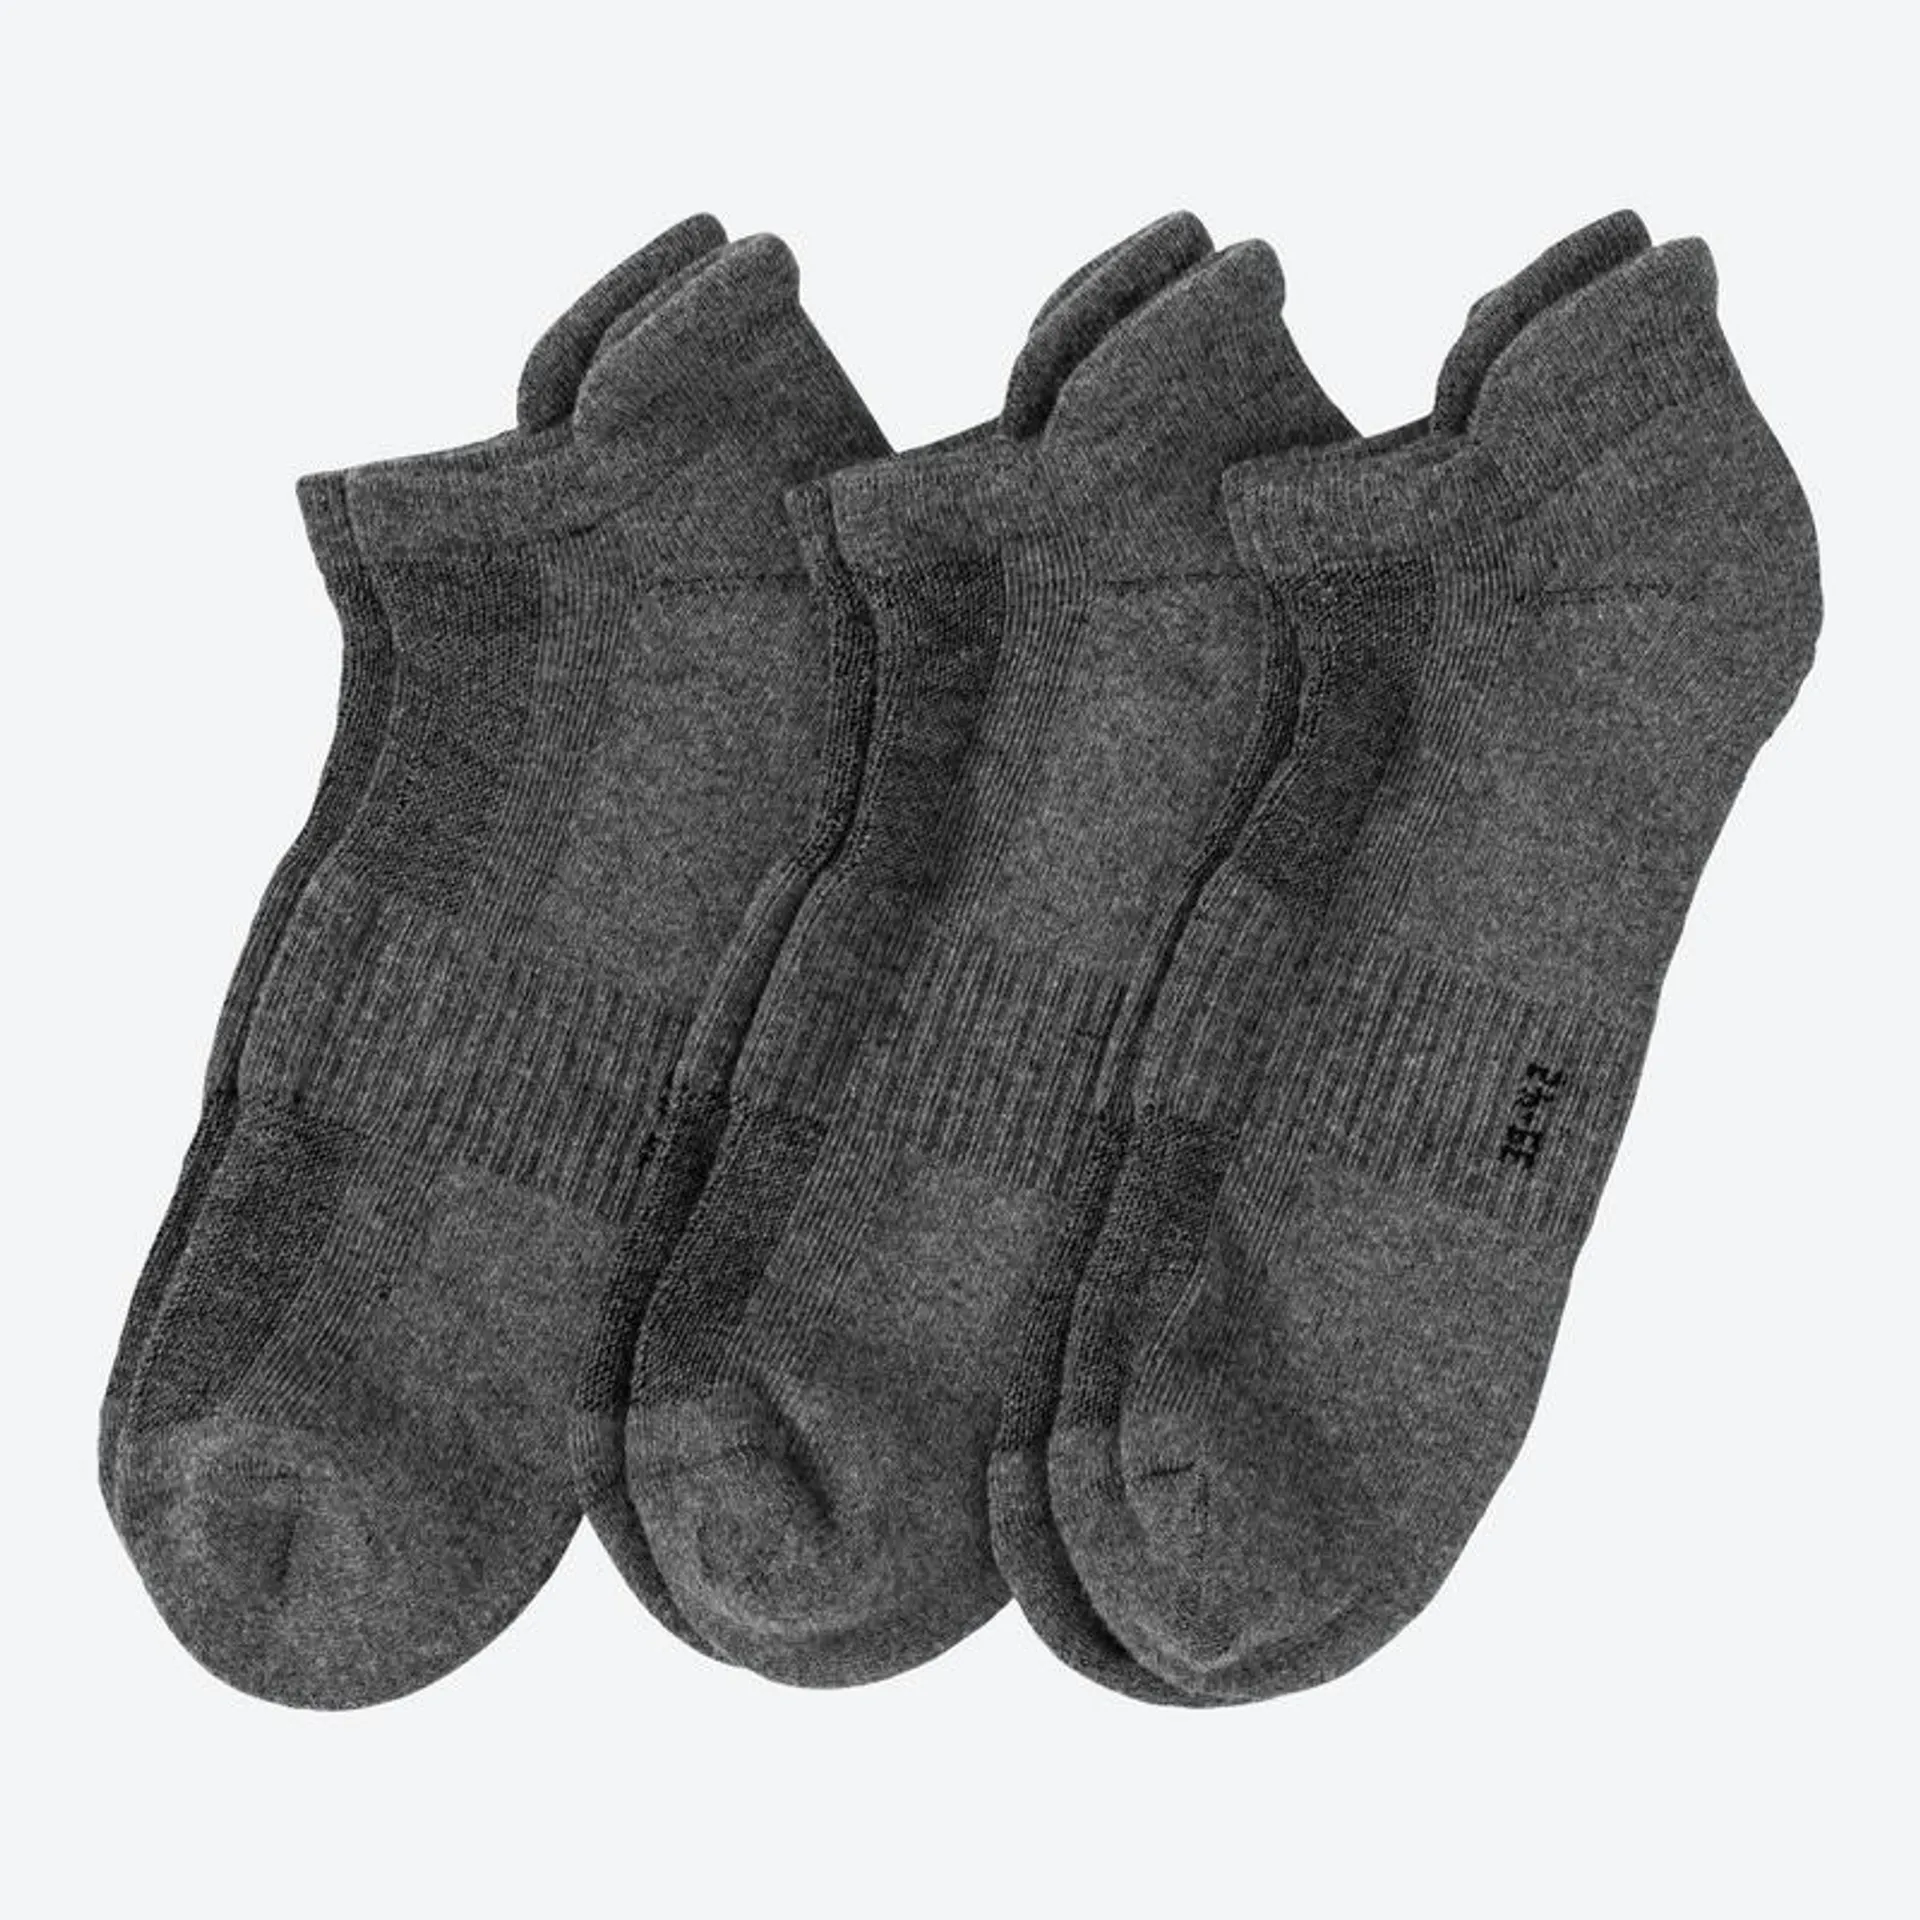 Sport-Sneaker-Socken mit Fersenschutz, 3er-Pack